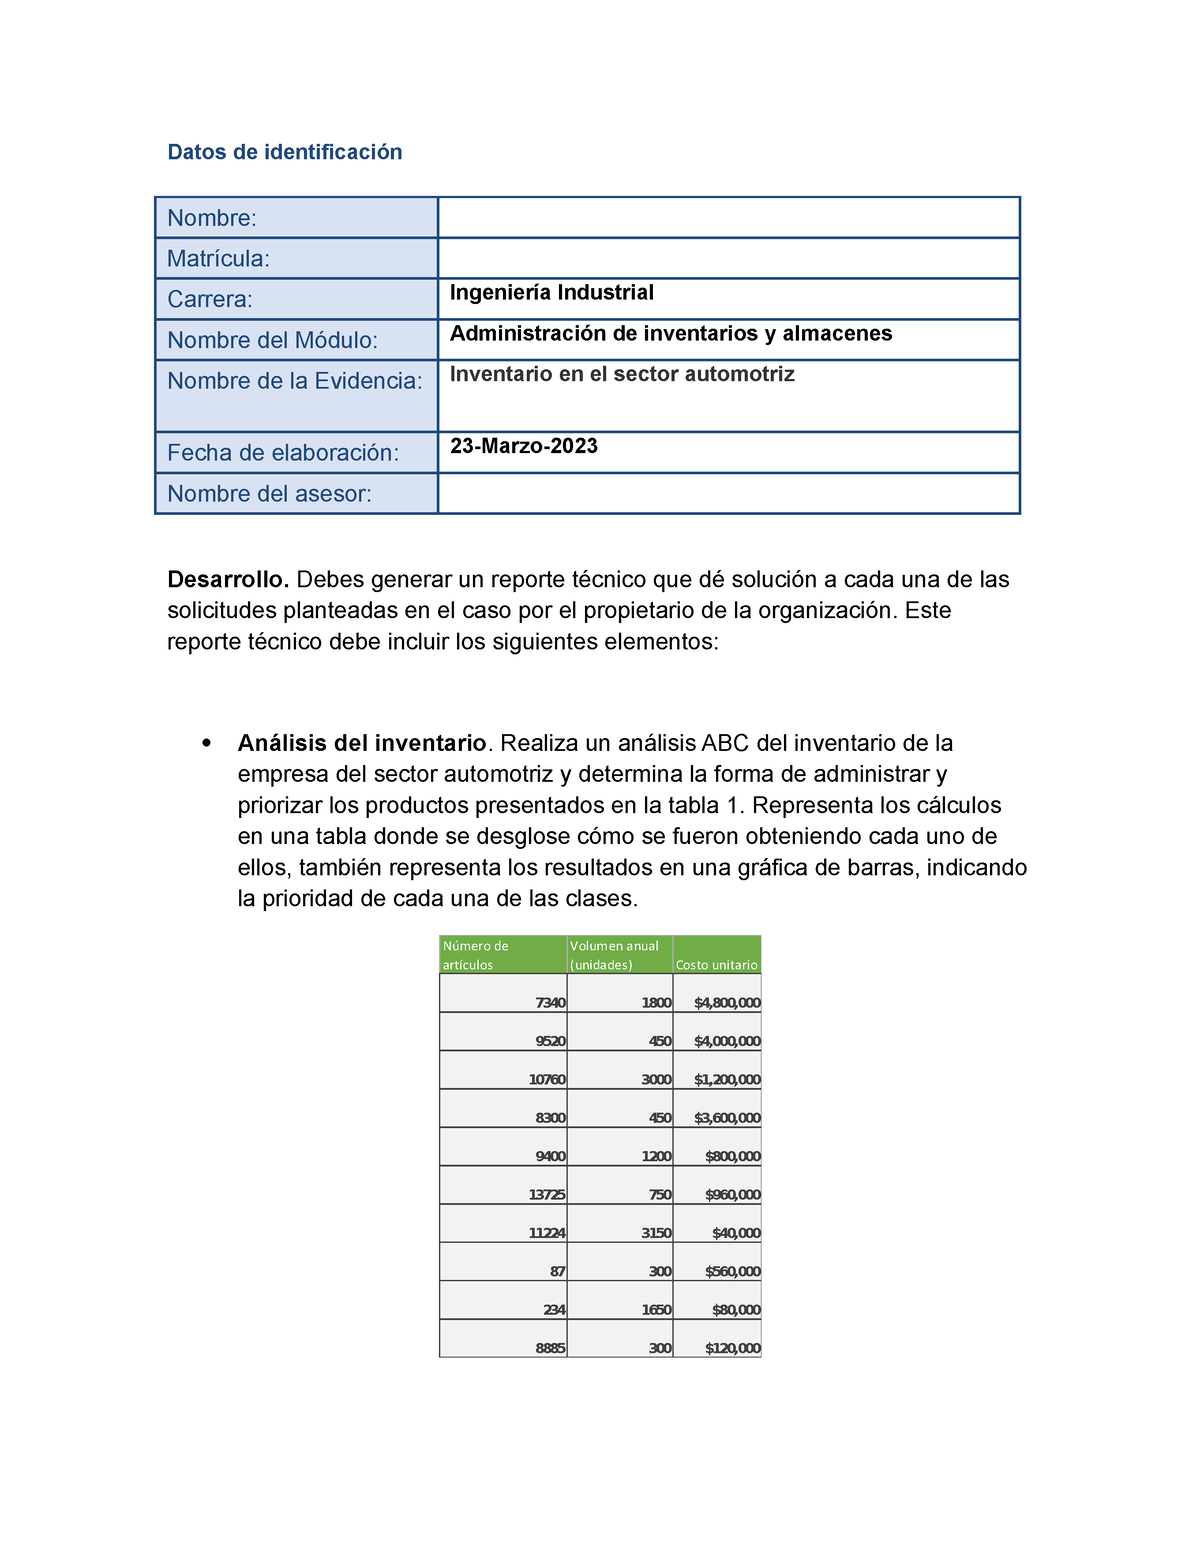 Garcia Alan Ea2 Inventario En El Sector Automotriz Datos De Identificación Nombre Matrícula 6564